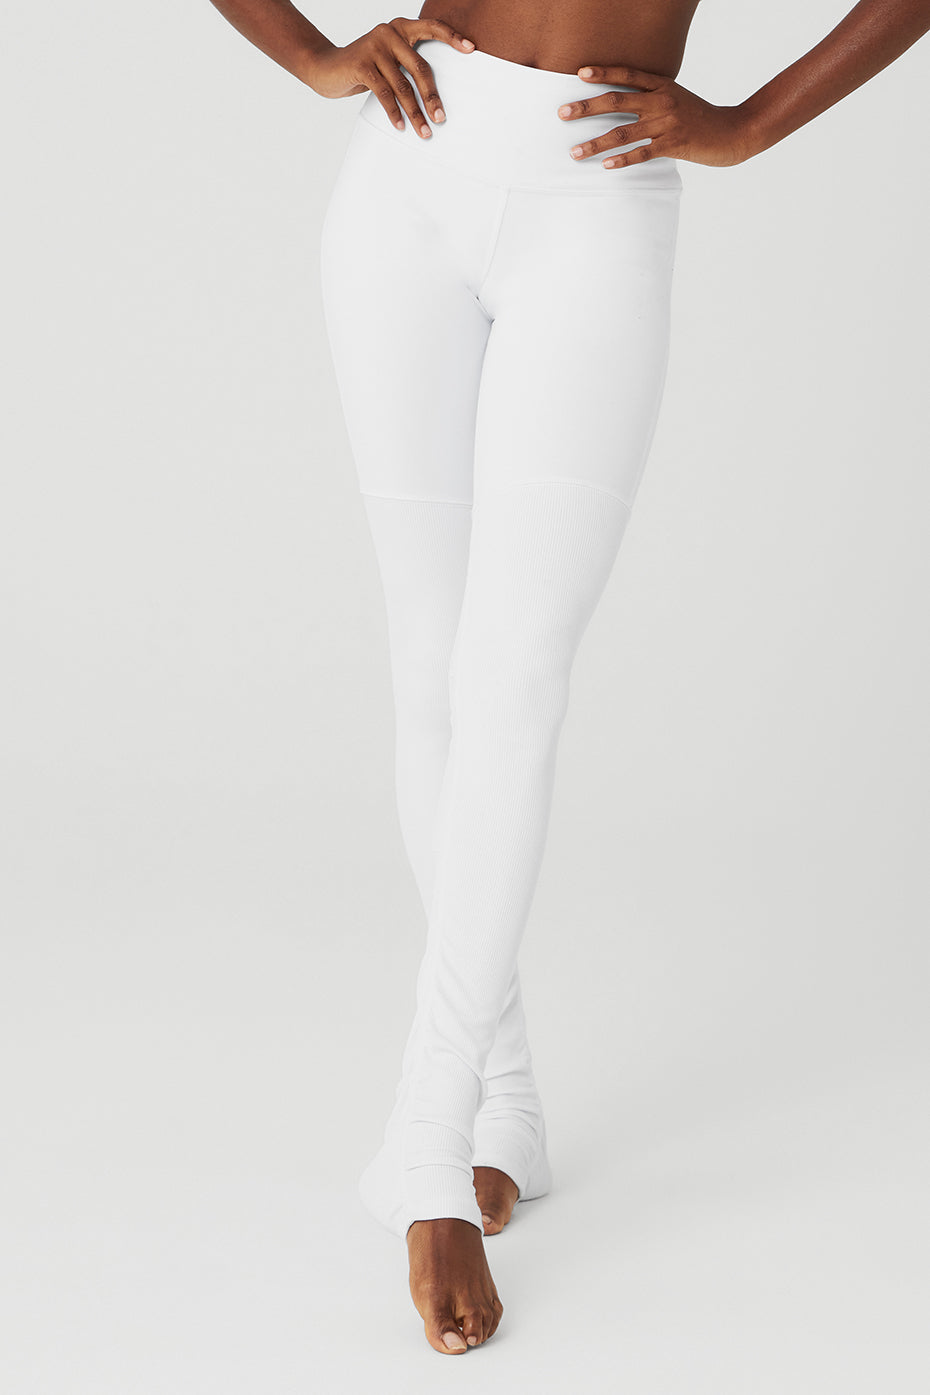 Alo Yoga Women's High Waist Bike Shorts, White, XXS, White, XX